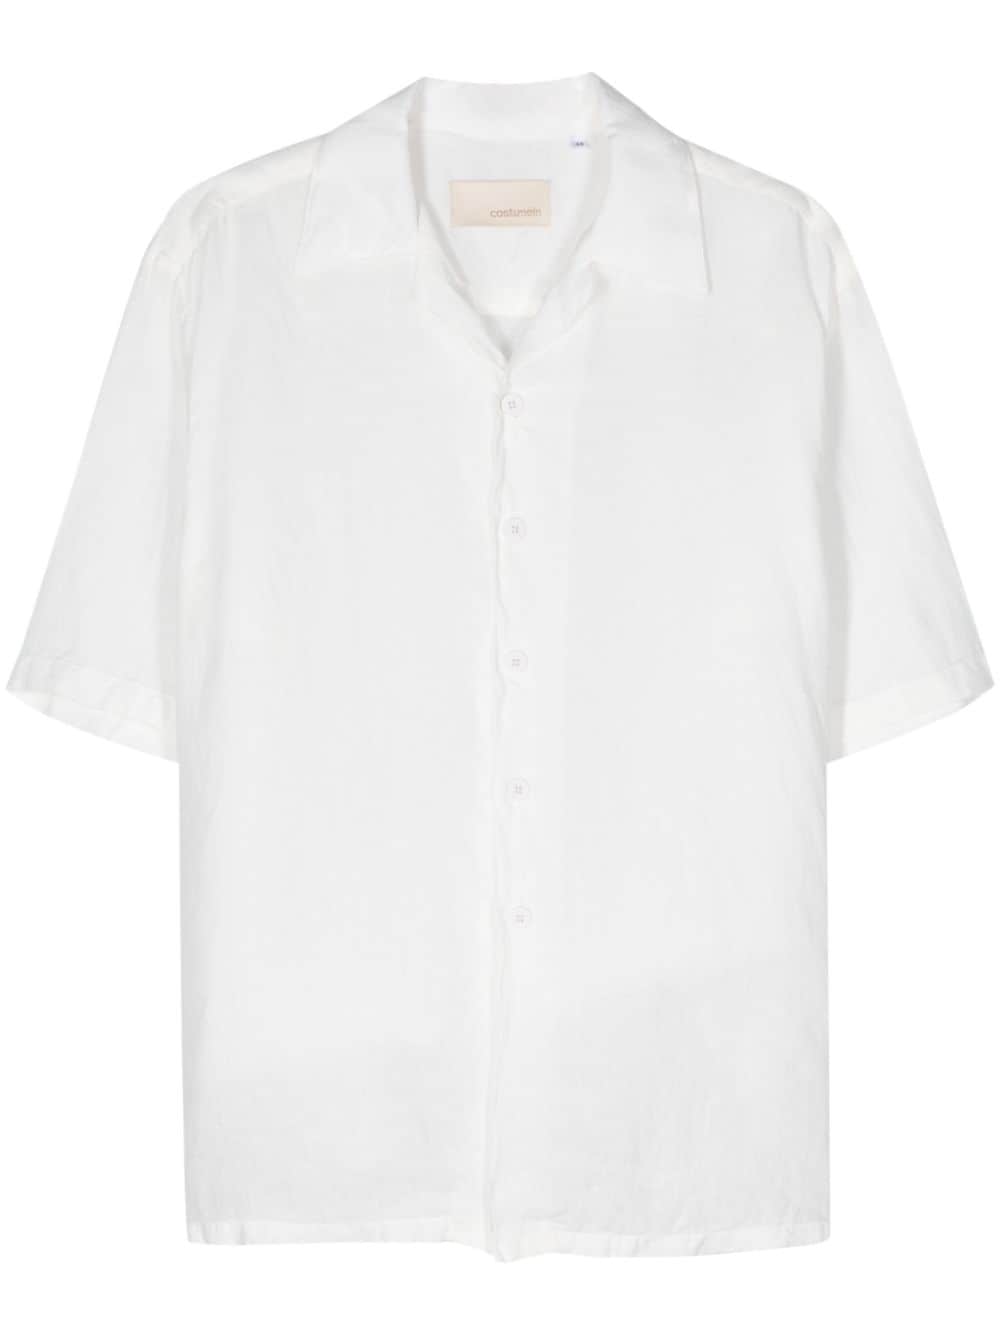 Costumein Robin linen shirt - White von Costumein